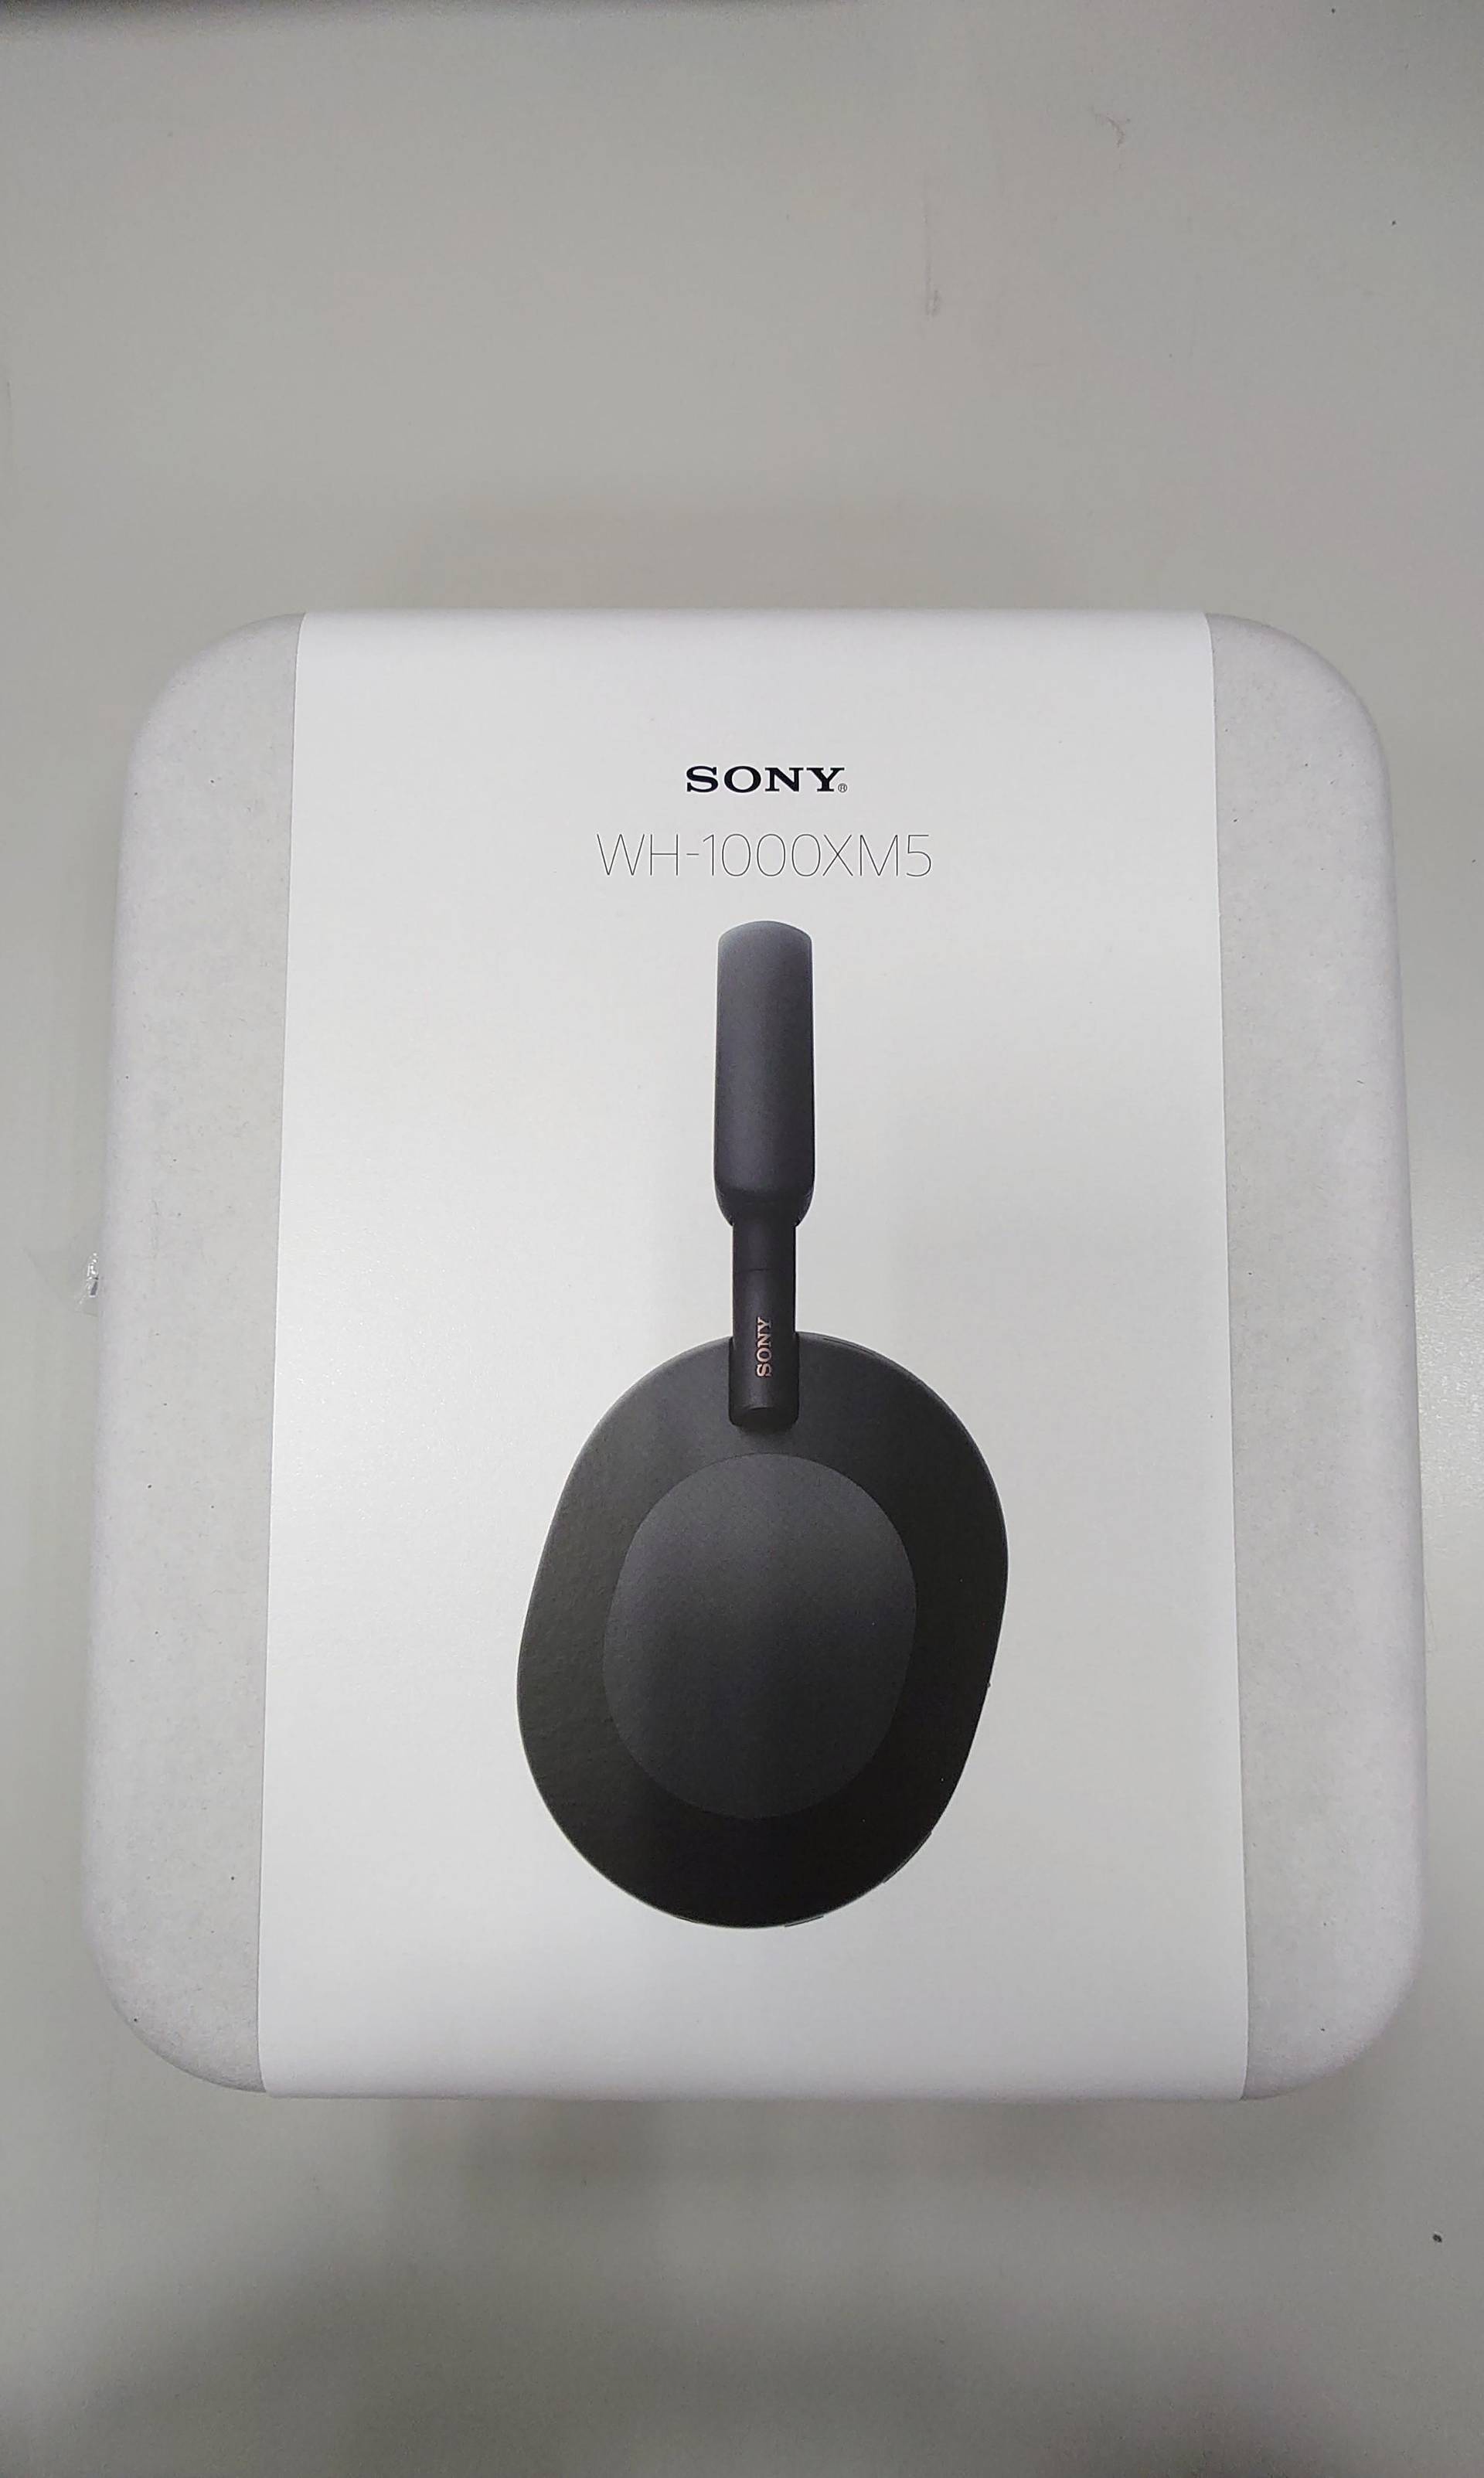 開箱】Sony WH-1000XM5 - s8903081000的創作- 巴哈姆特